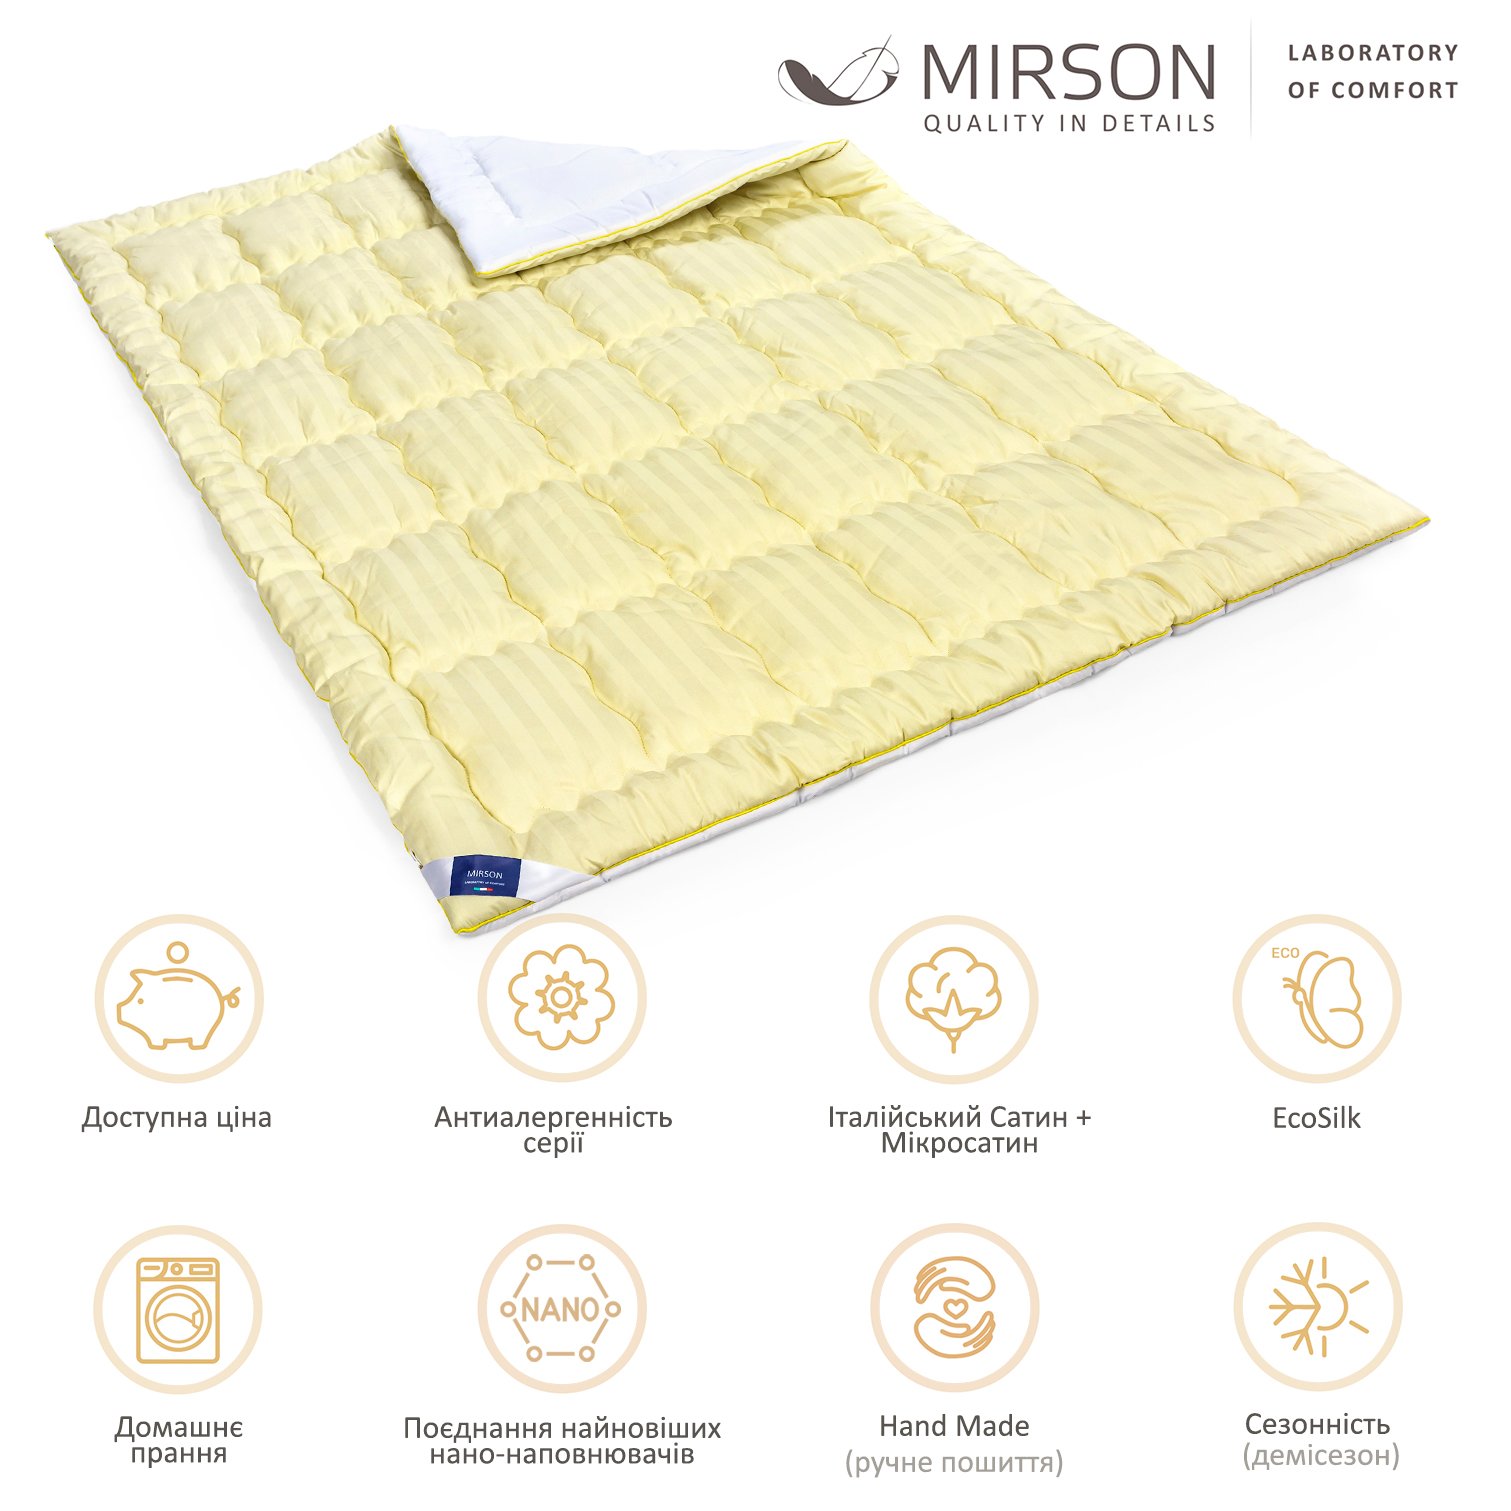 Одеяло антиаллергенное MirSon Carmela Hand Made EcoSilk №0552, демисезонное, 110x140 см, желто-белое - фото 6